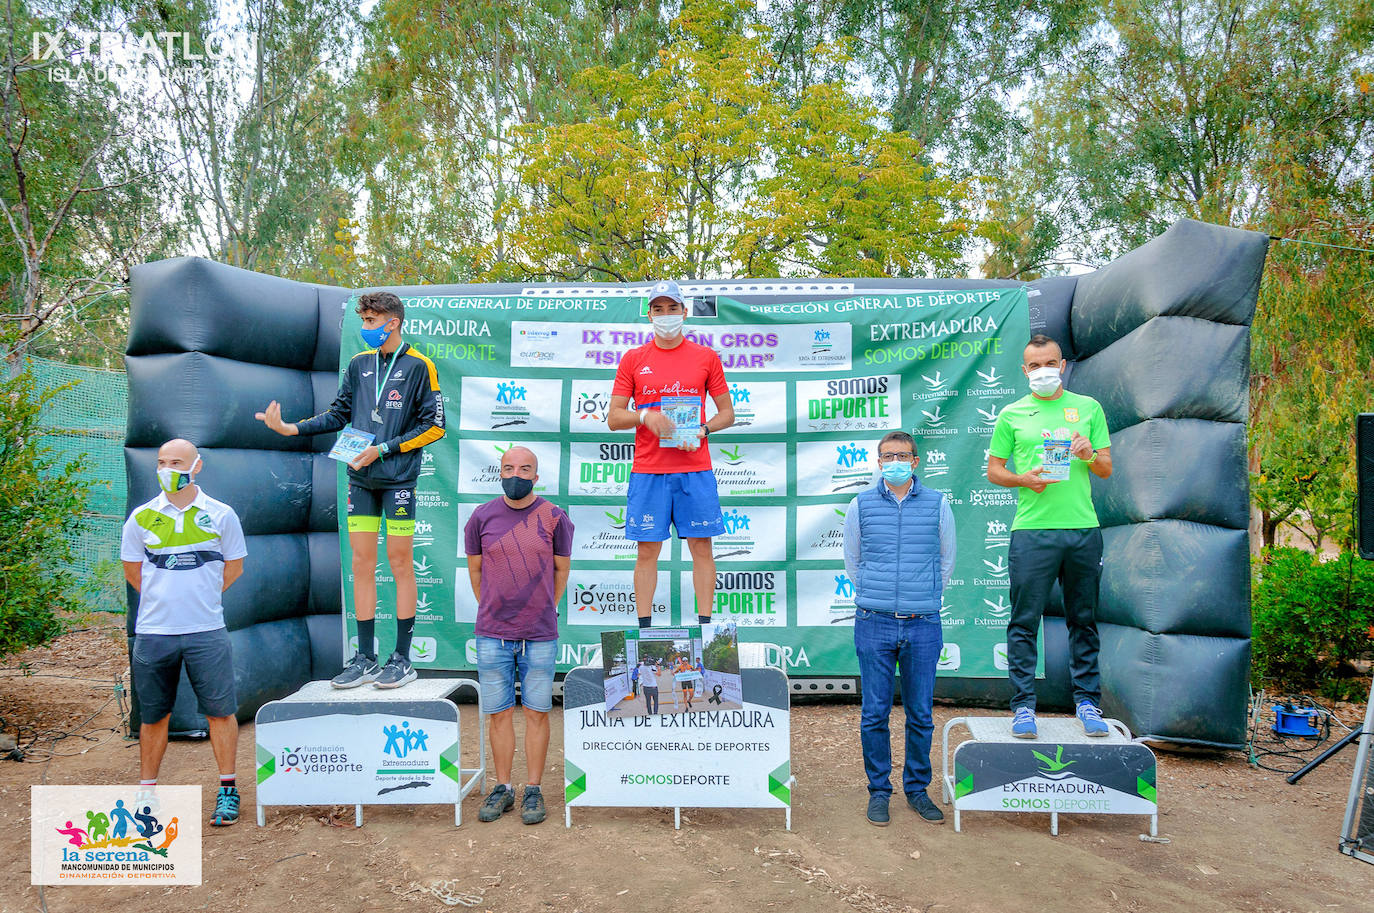 Éxito deportivo y de organización en el Campeonato de Extremadura de Triatlón Cros celebrado en la Isla del Zújar